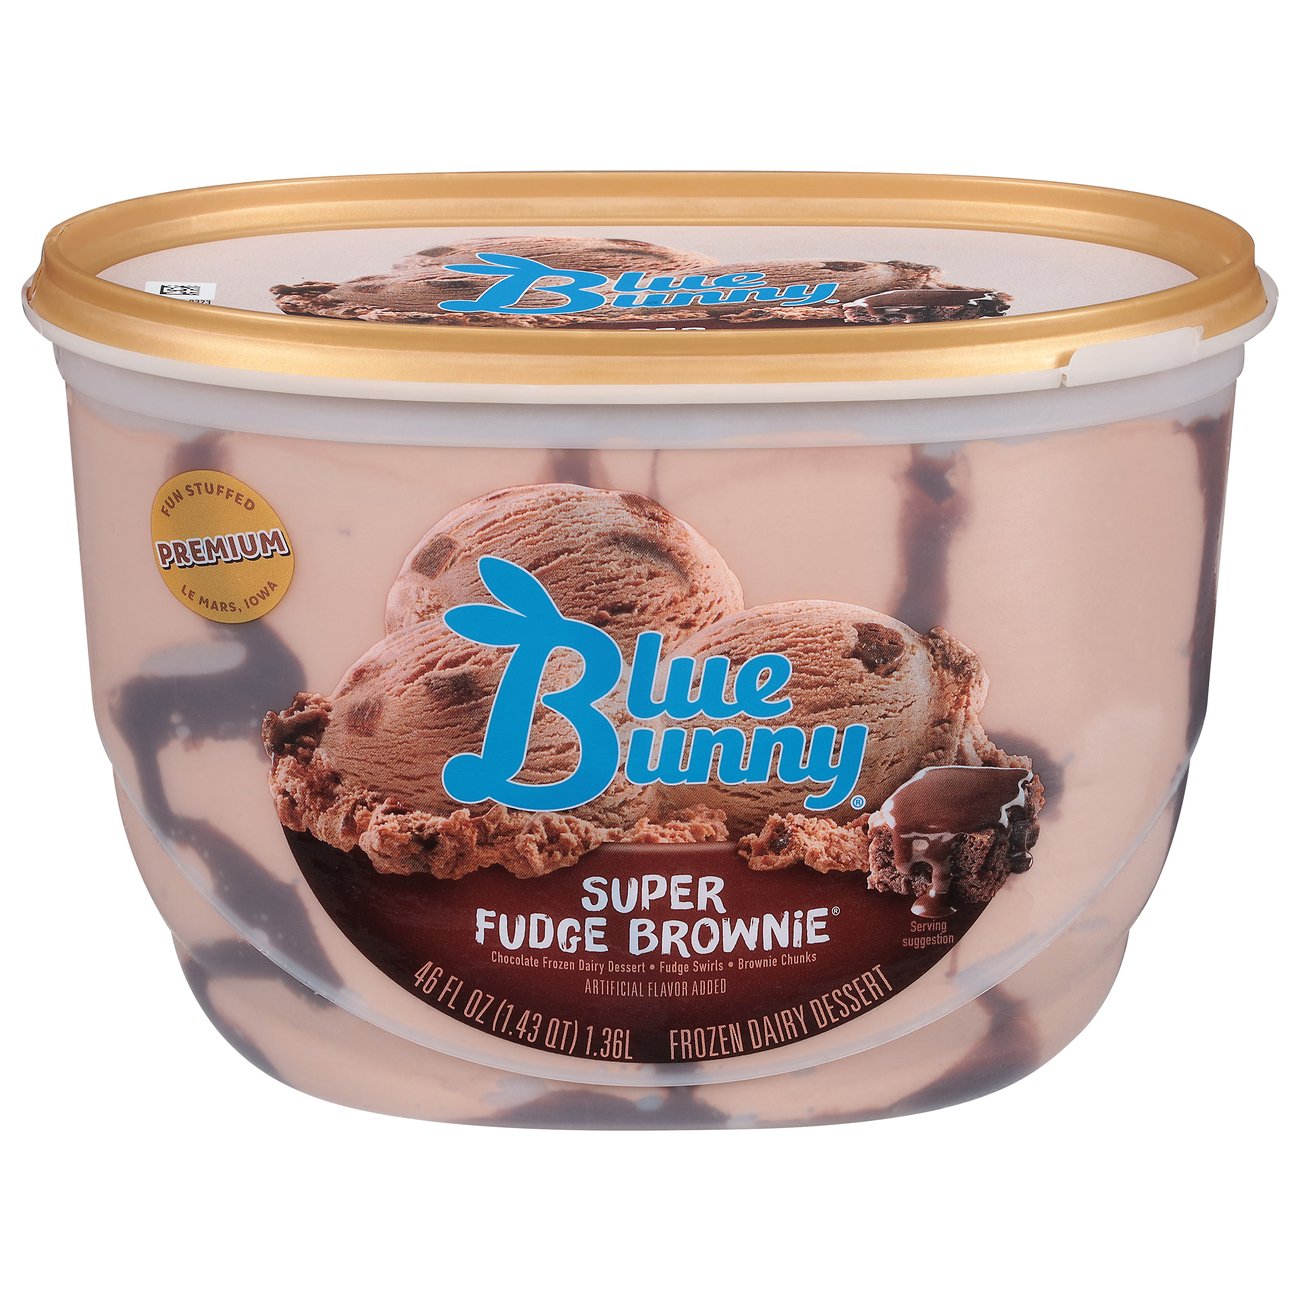 Blue Bunny Super Fudge Brownie Ice Cream - Shop Ice Cream at H-E-B